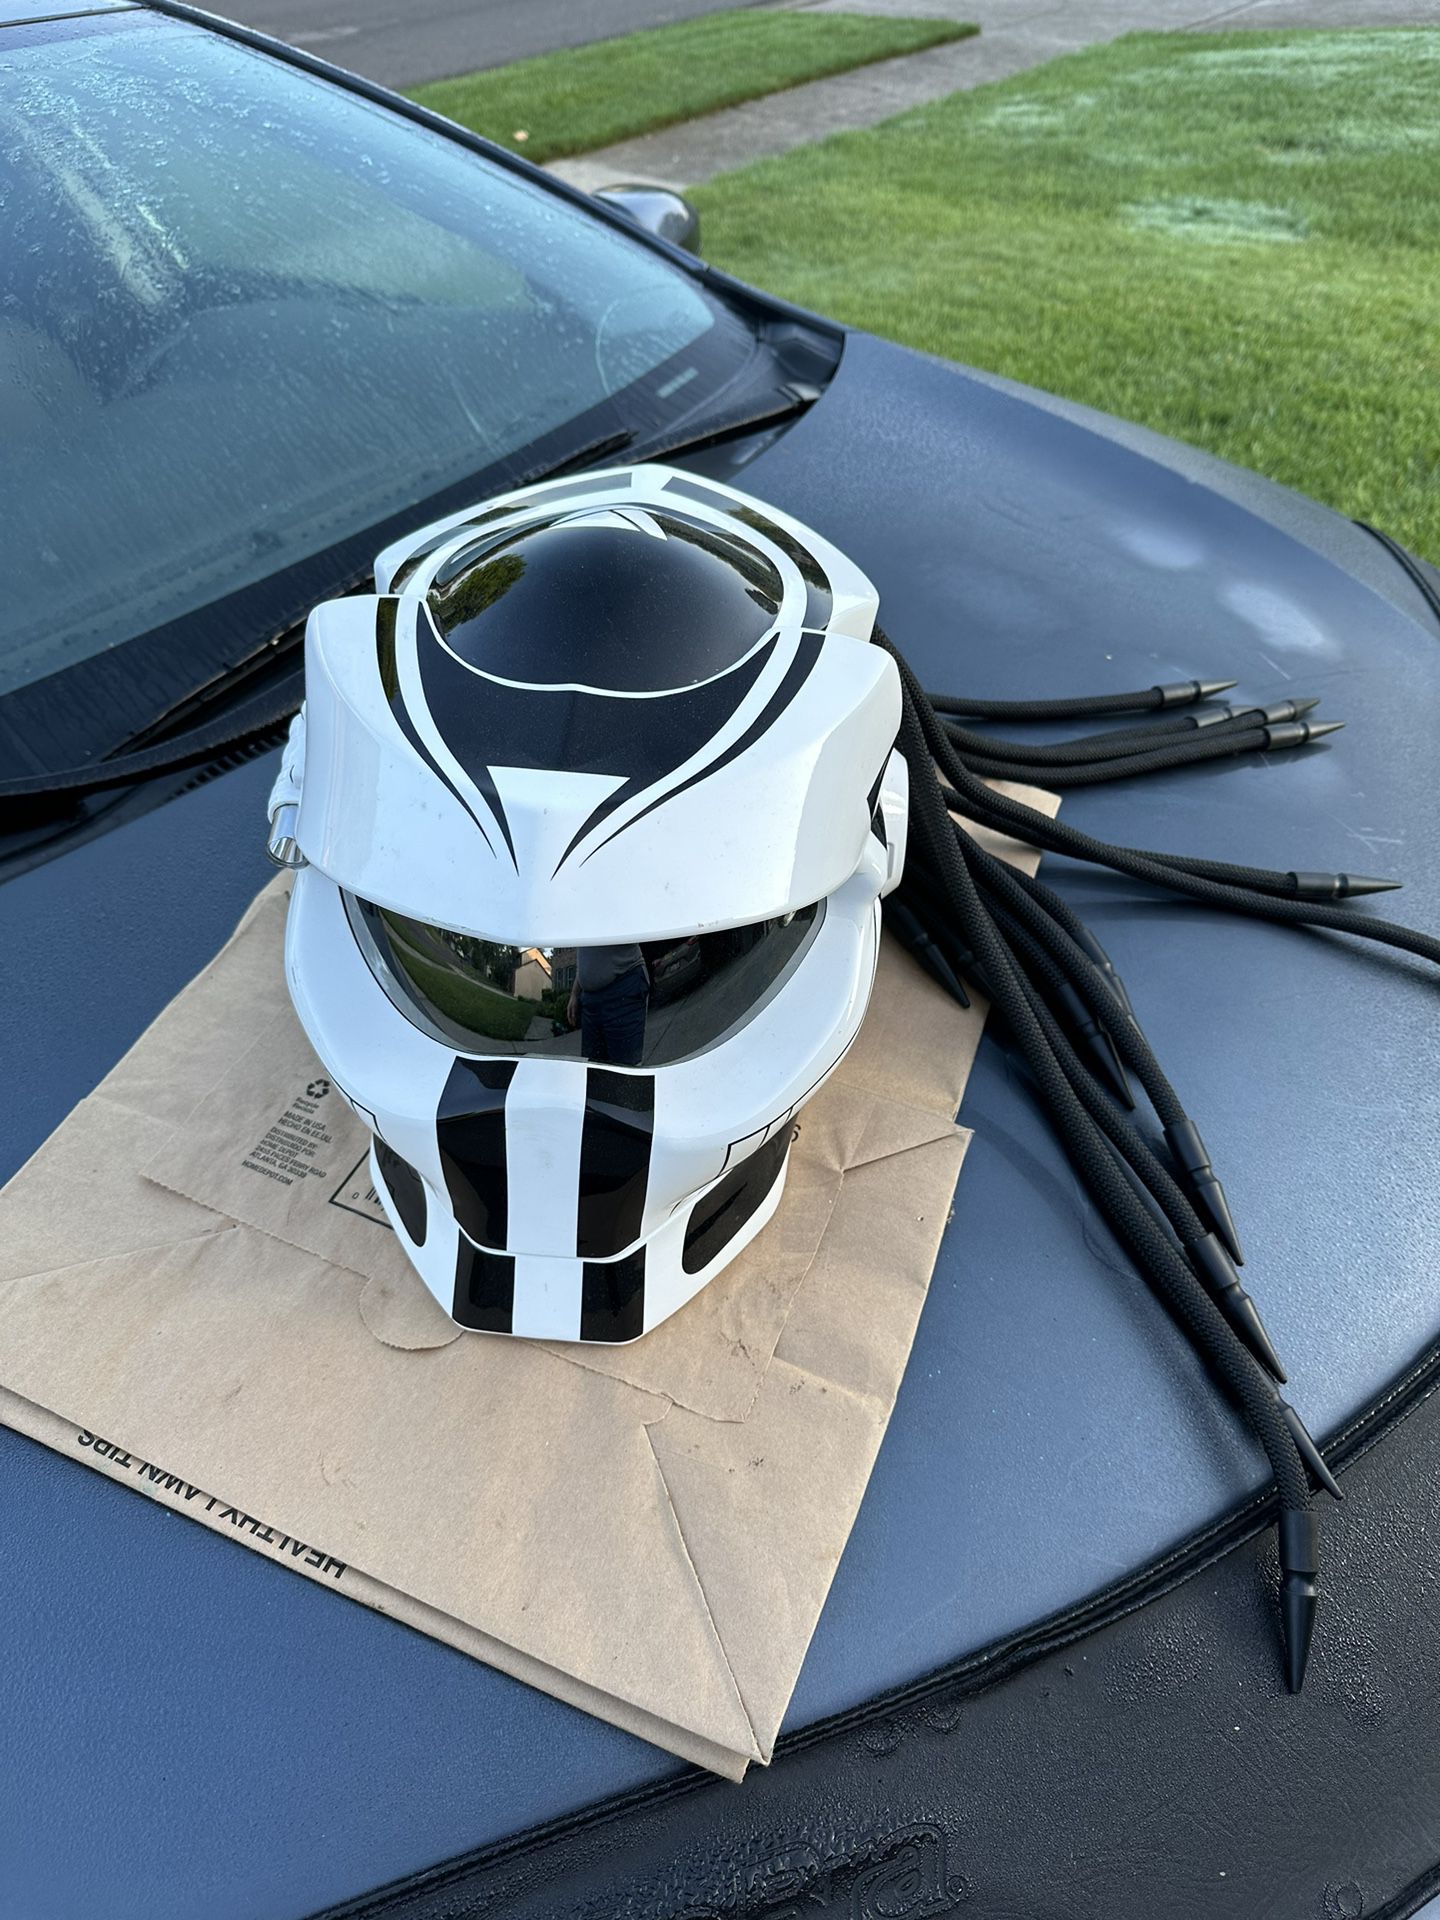 Predator SOMAN  Dot Large Motorcycle Helmet 